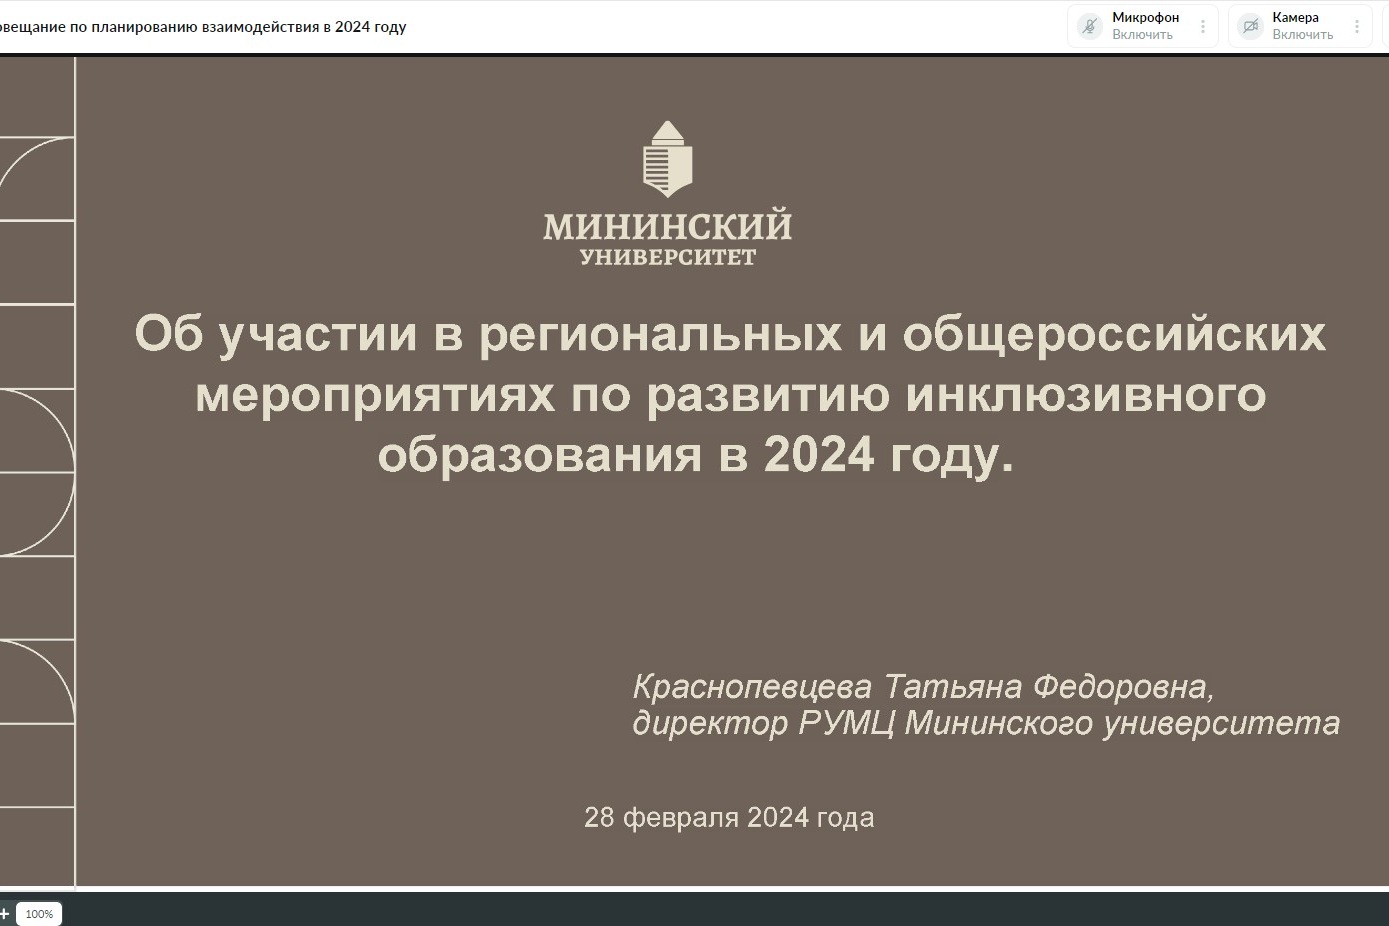 РУМЦ Мининского университета провел рабочее совещание с вузами-партнерами по планированию взаимодействия в 2024 году